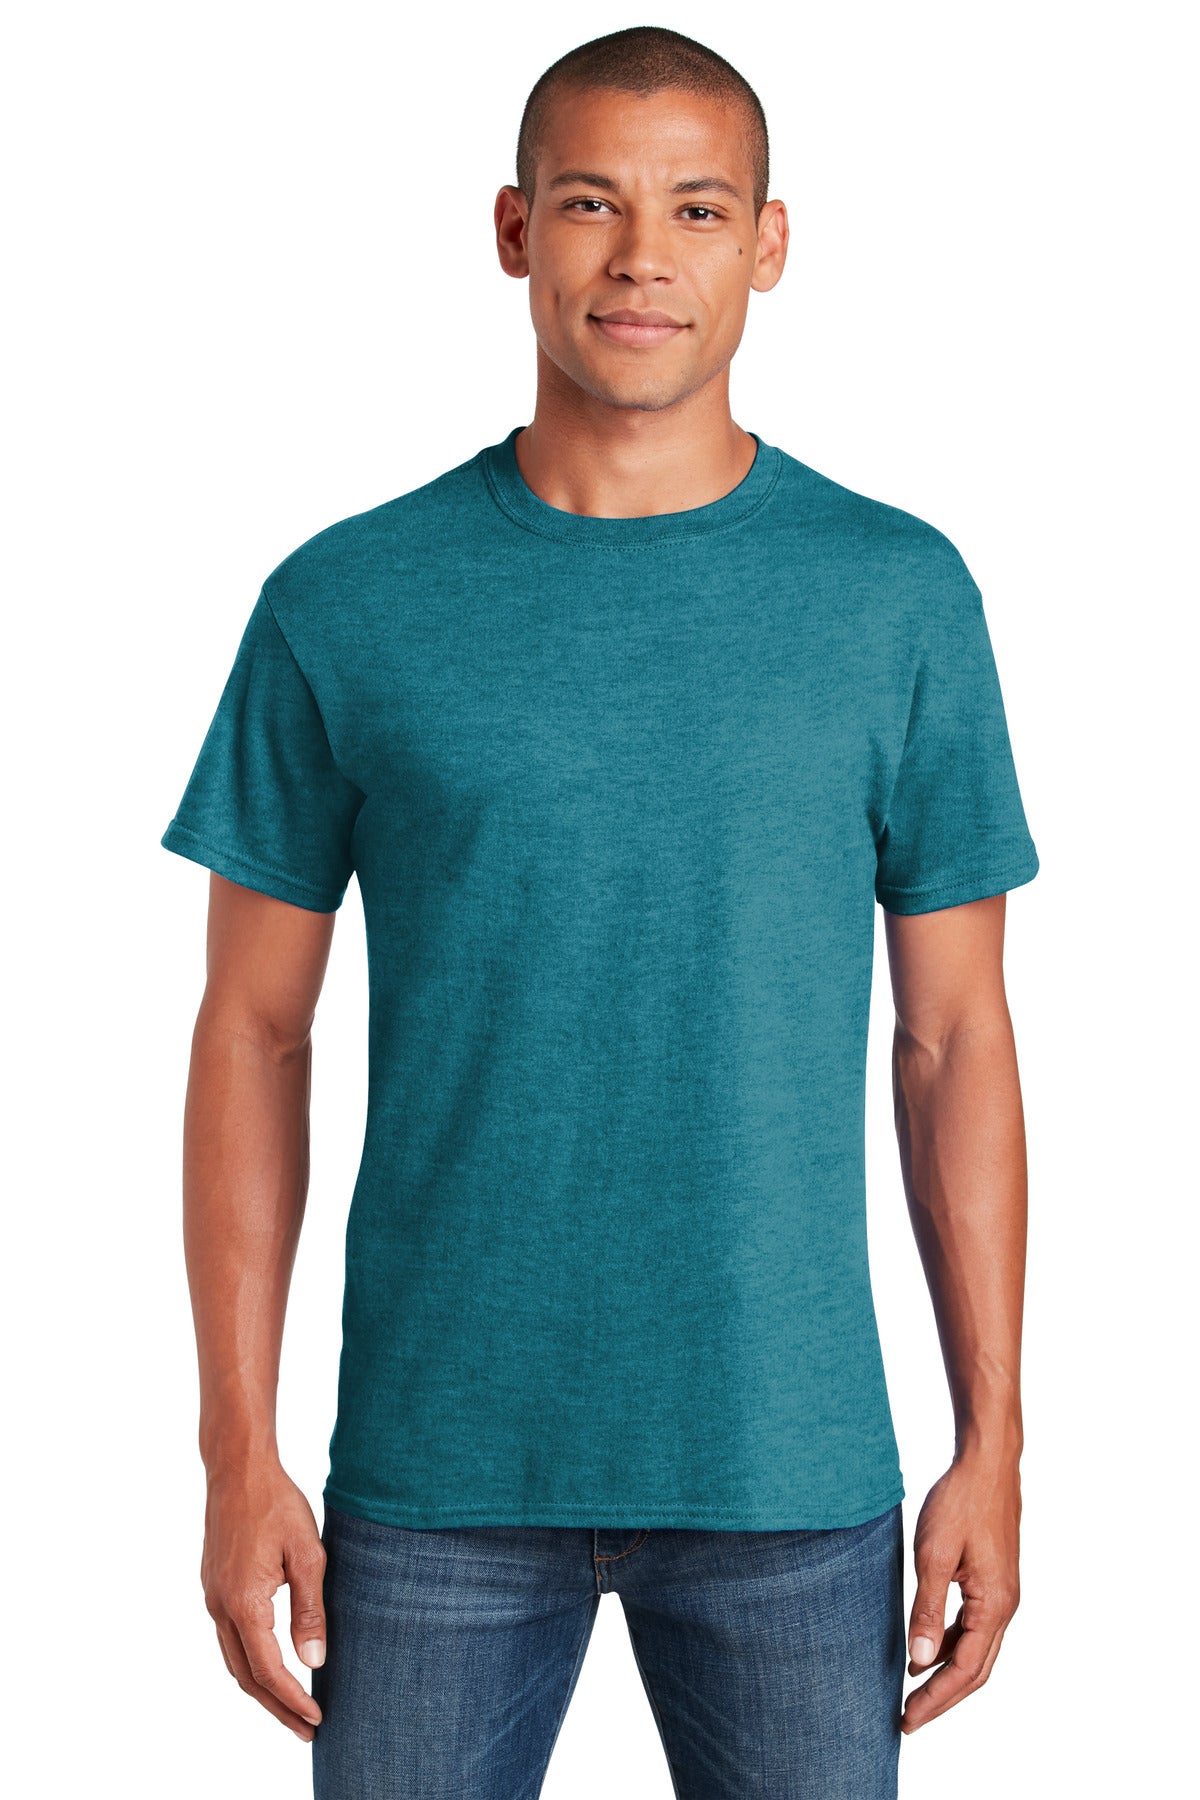 T-Shirts Heather Galapagos Blue Gildan